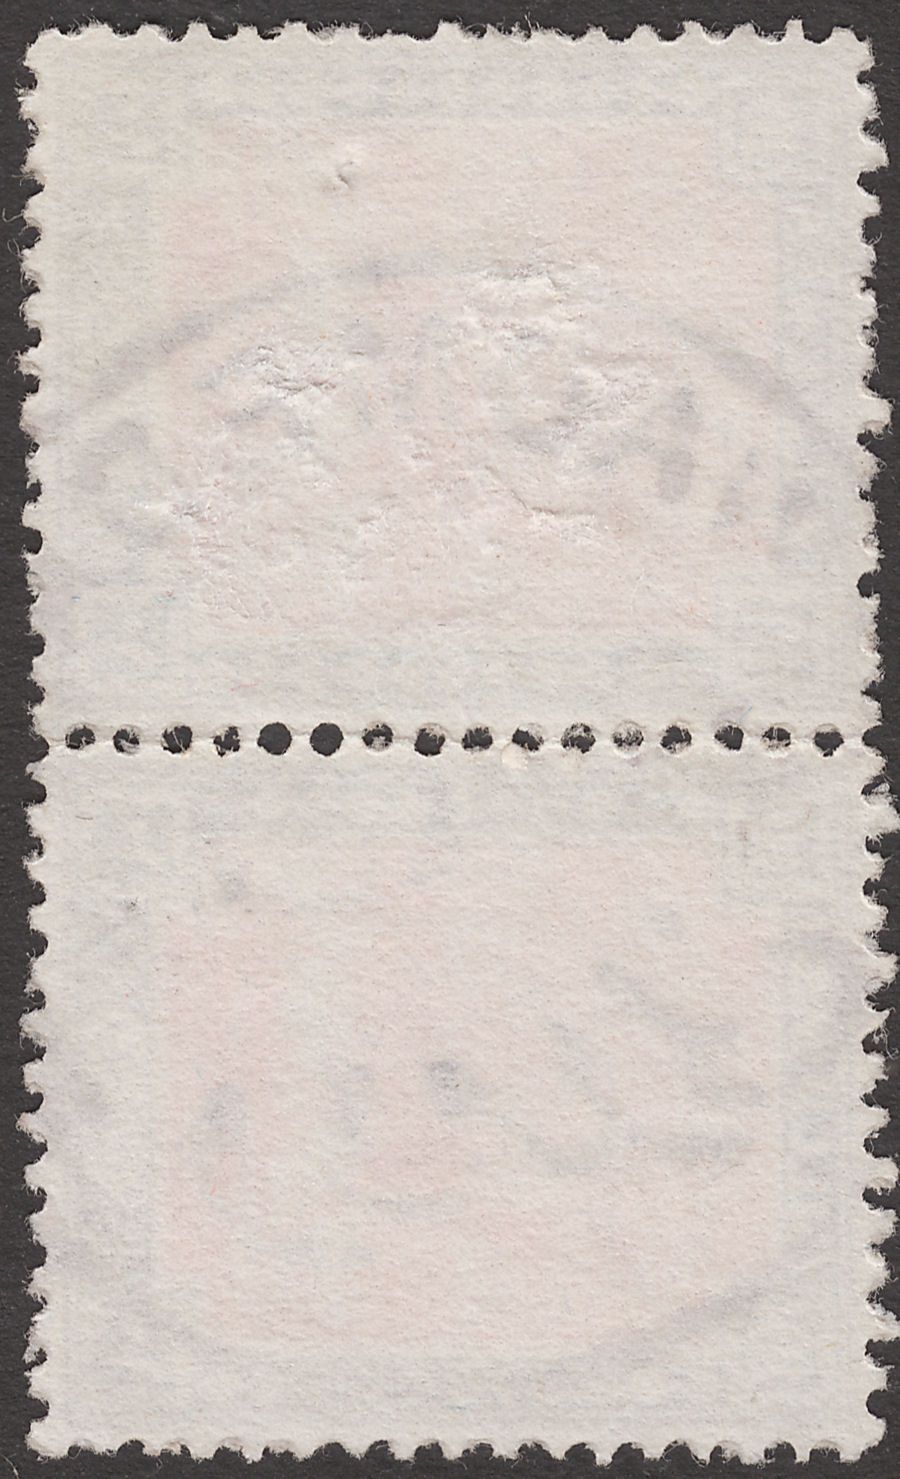 Sudan 1949 Camel Postman 10m Rose-Red + Black Pair Used w WADMEDANI Postmark